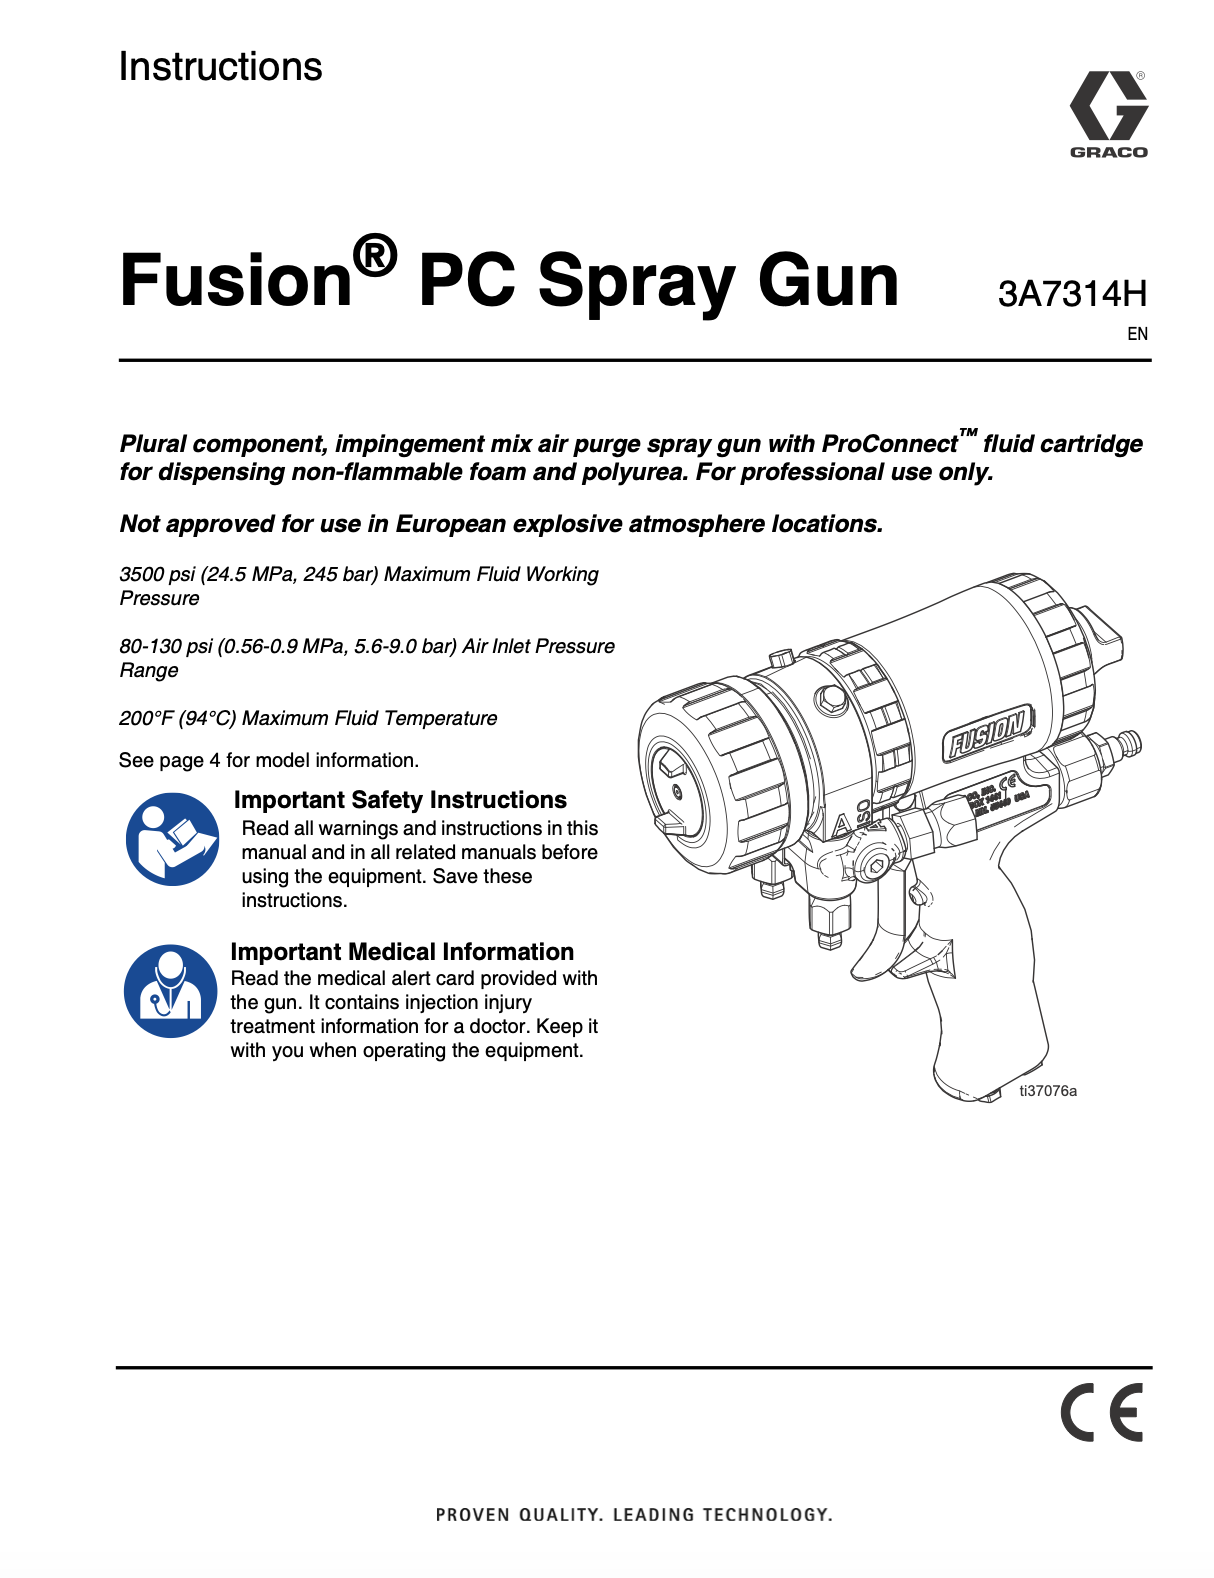 Graco Fusion PC Spray Gun (Pro Connect) Manual 3A7314H